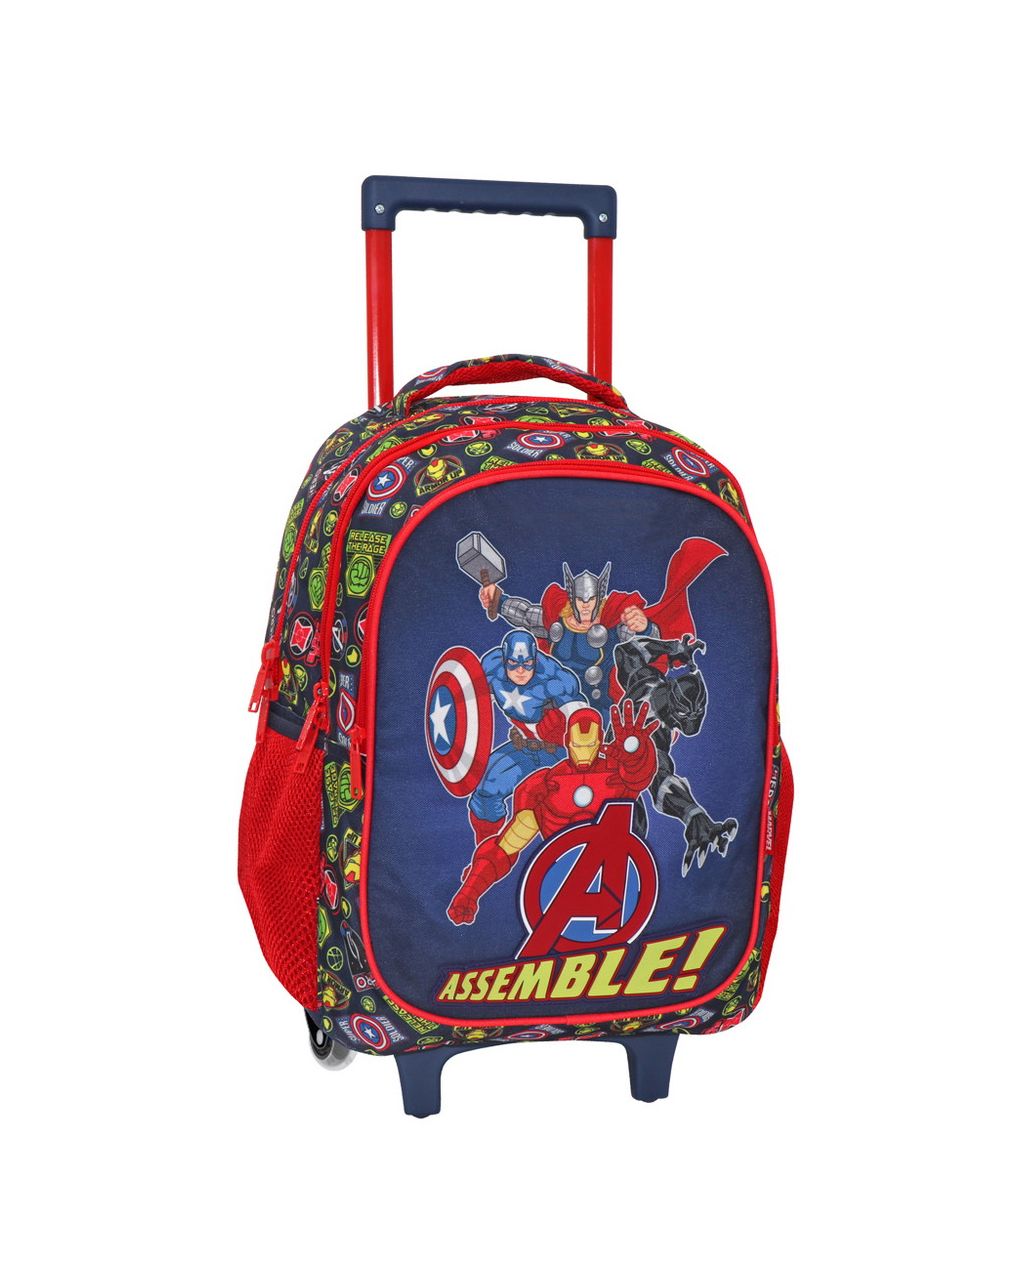 σχολική τσάντα τρόλεϊ δημοτικού avengers assemble 3 θήκες 000506101 - Avengers